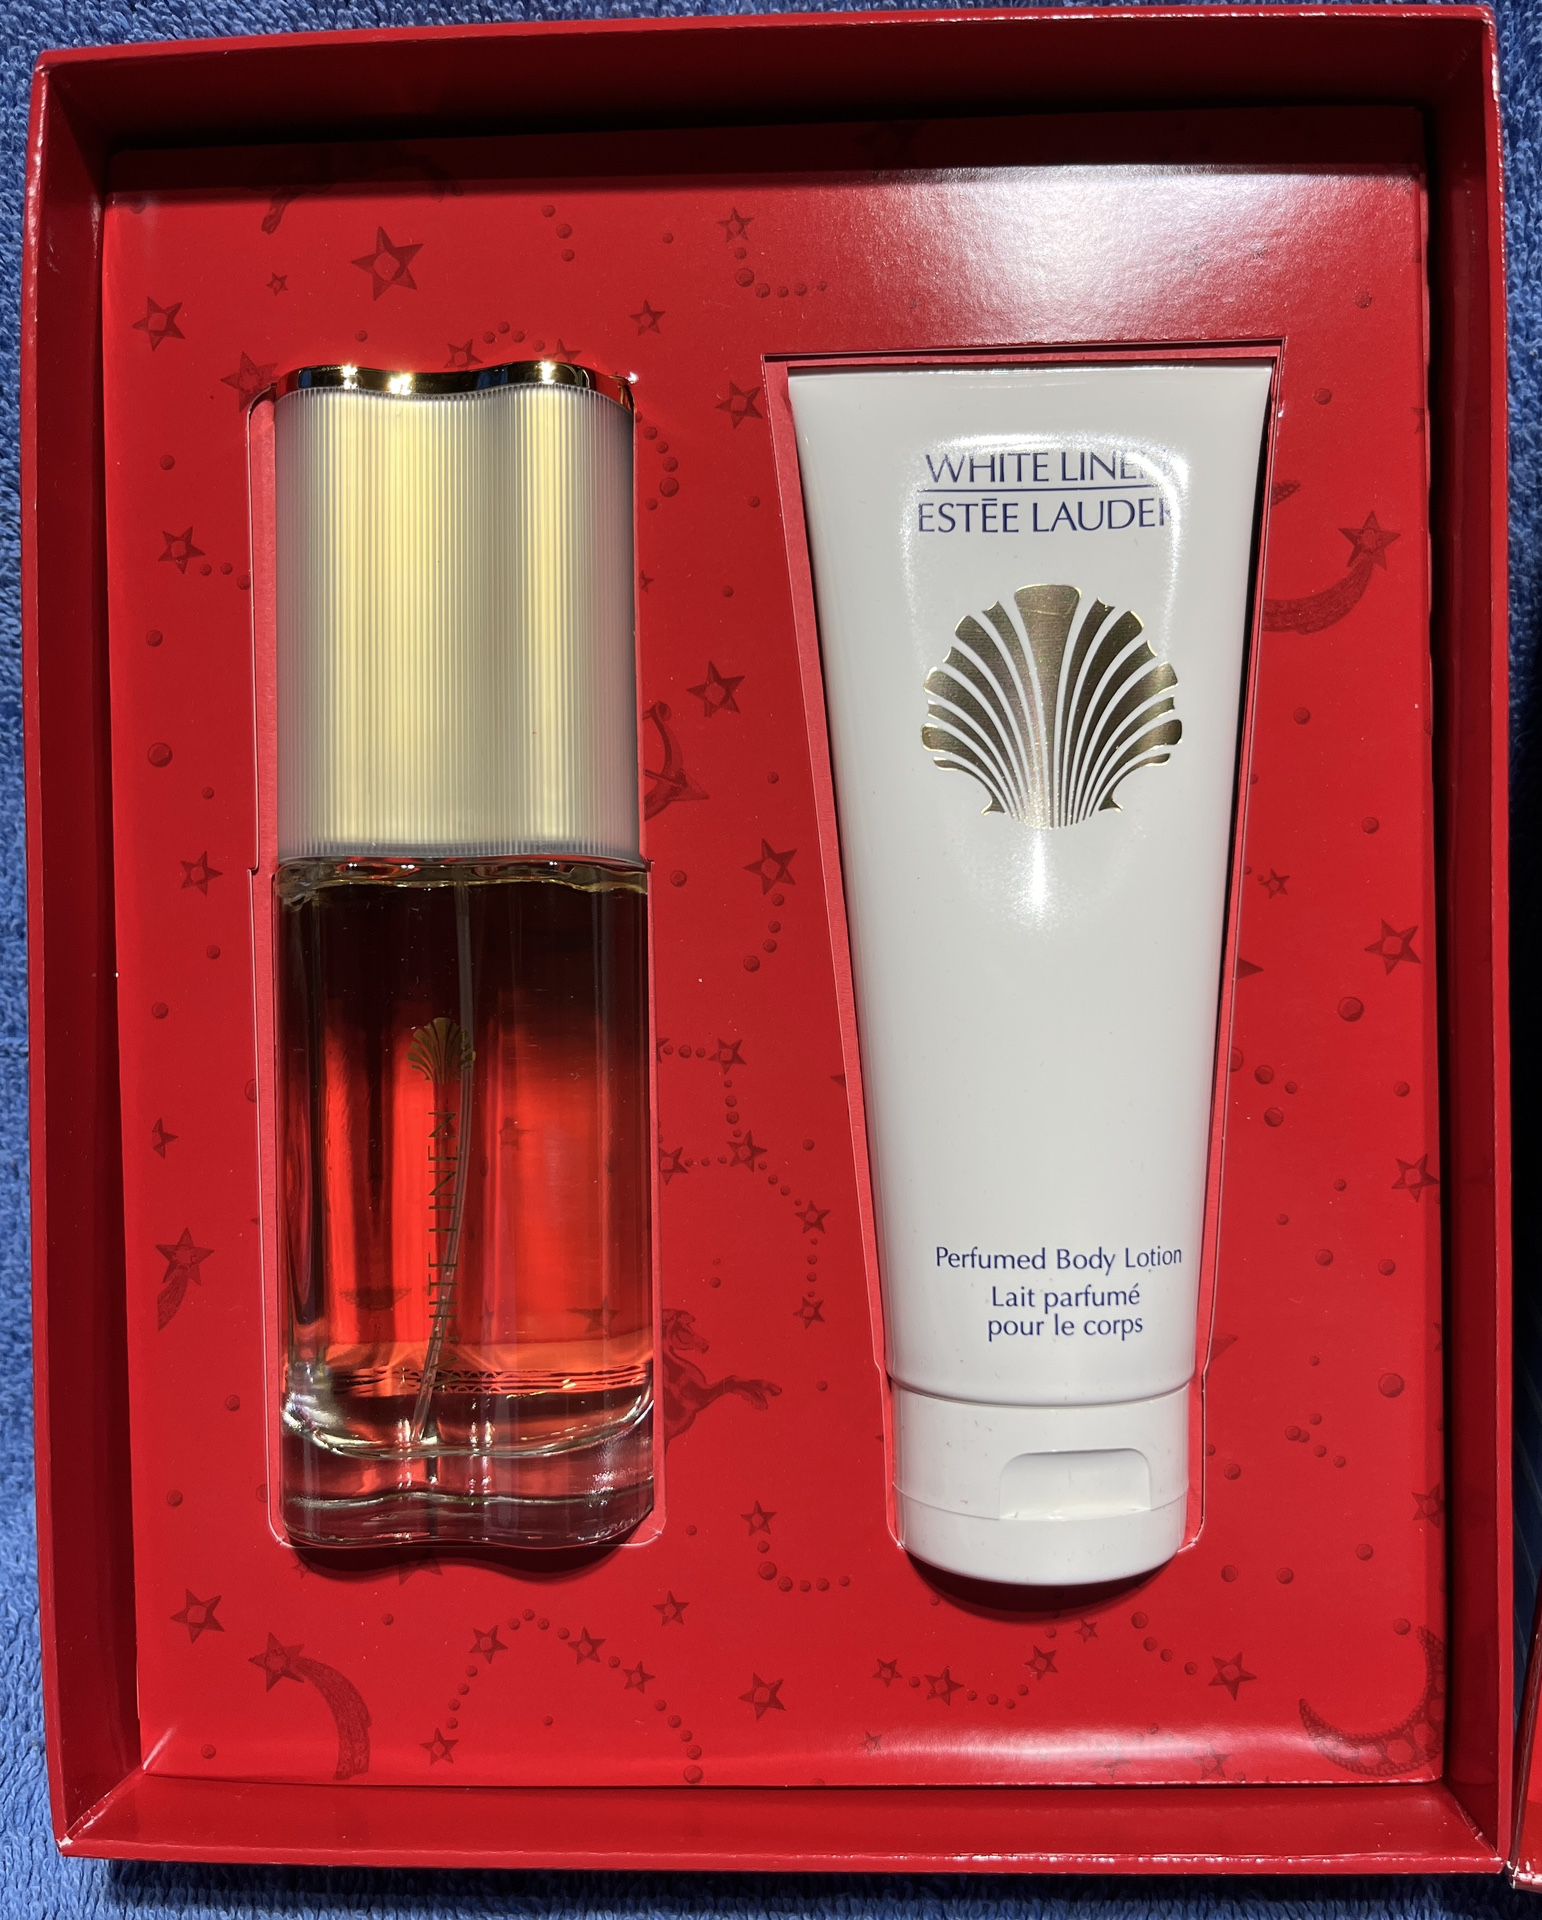 Estee Lauder White Linen Perfume Gift Set - NEW